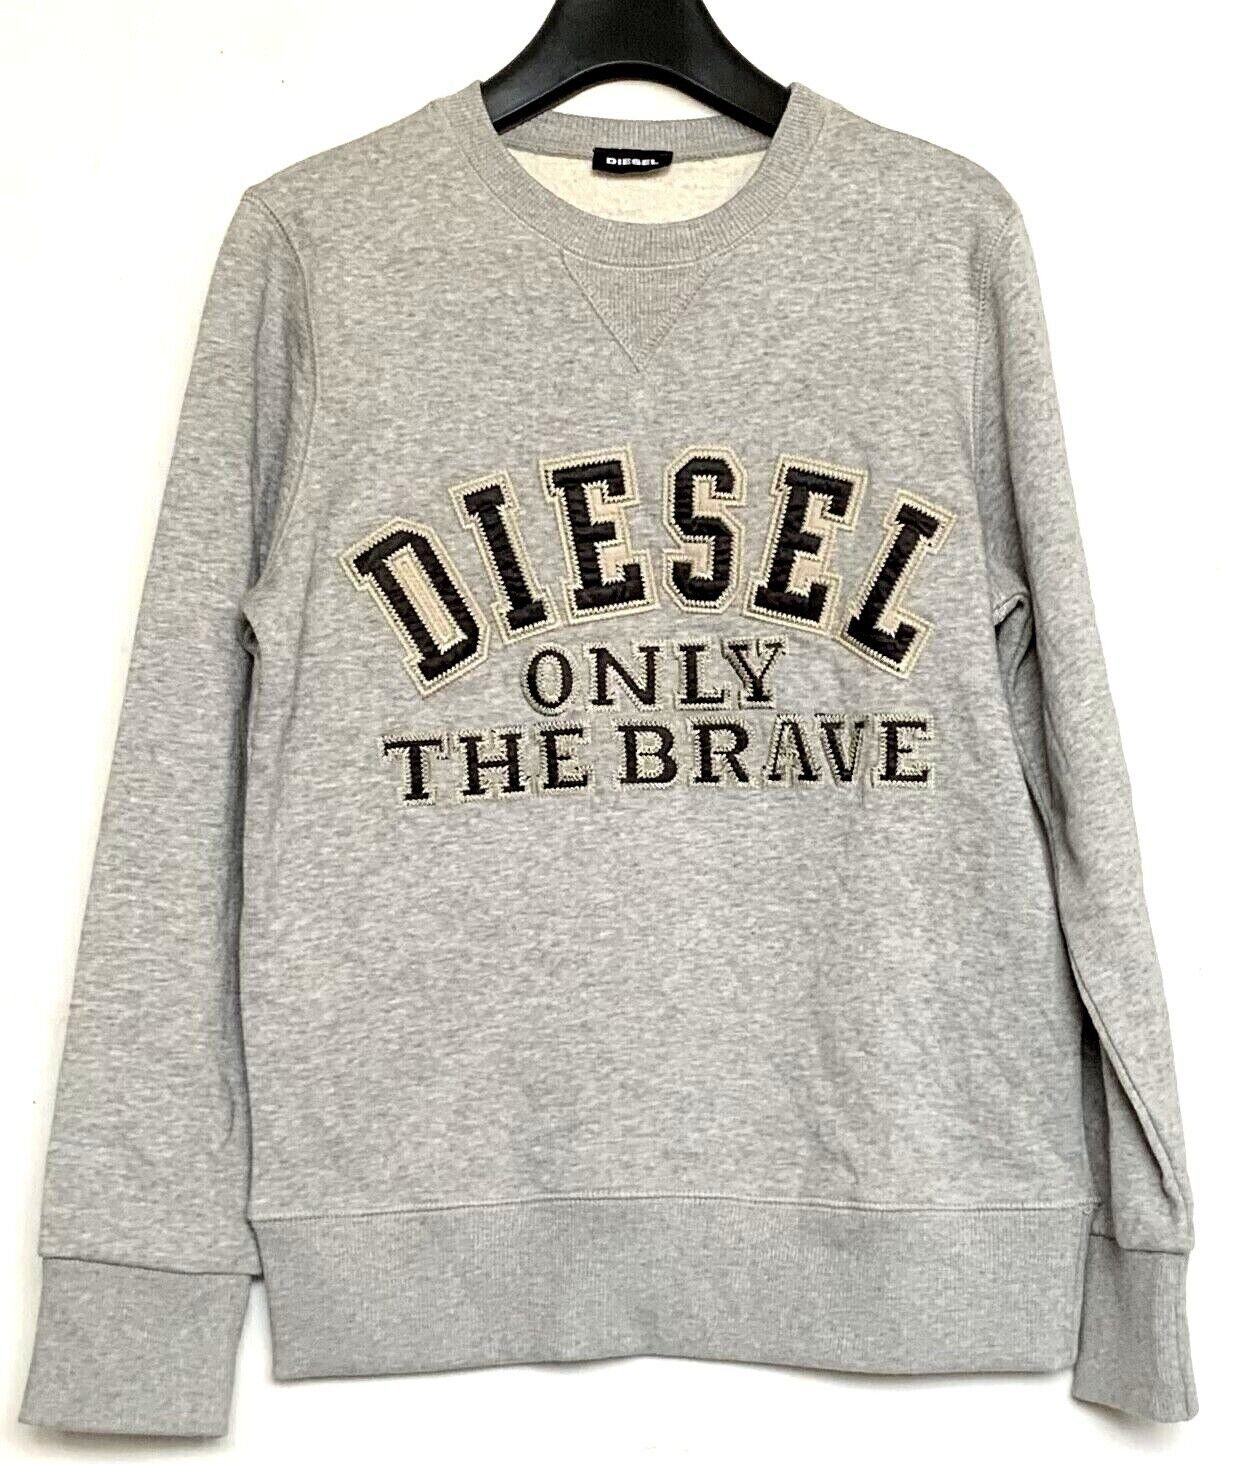 Diesel Sweatshirt Diesel Kinder Pullover, Diesel Sweatshirt, Diesel Jeans Kinder Pullover Grau